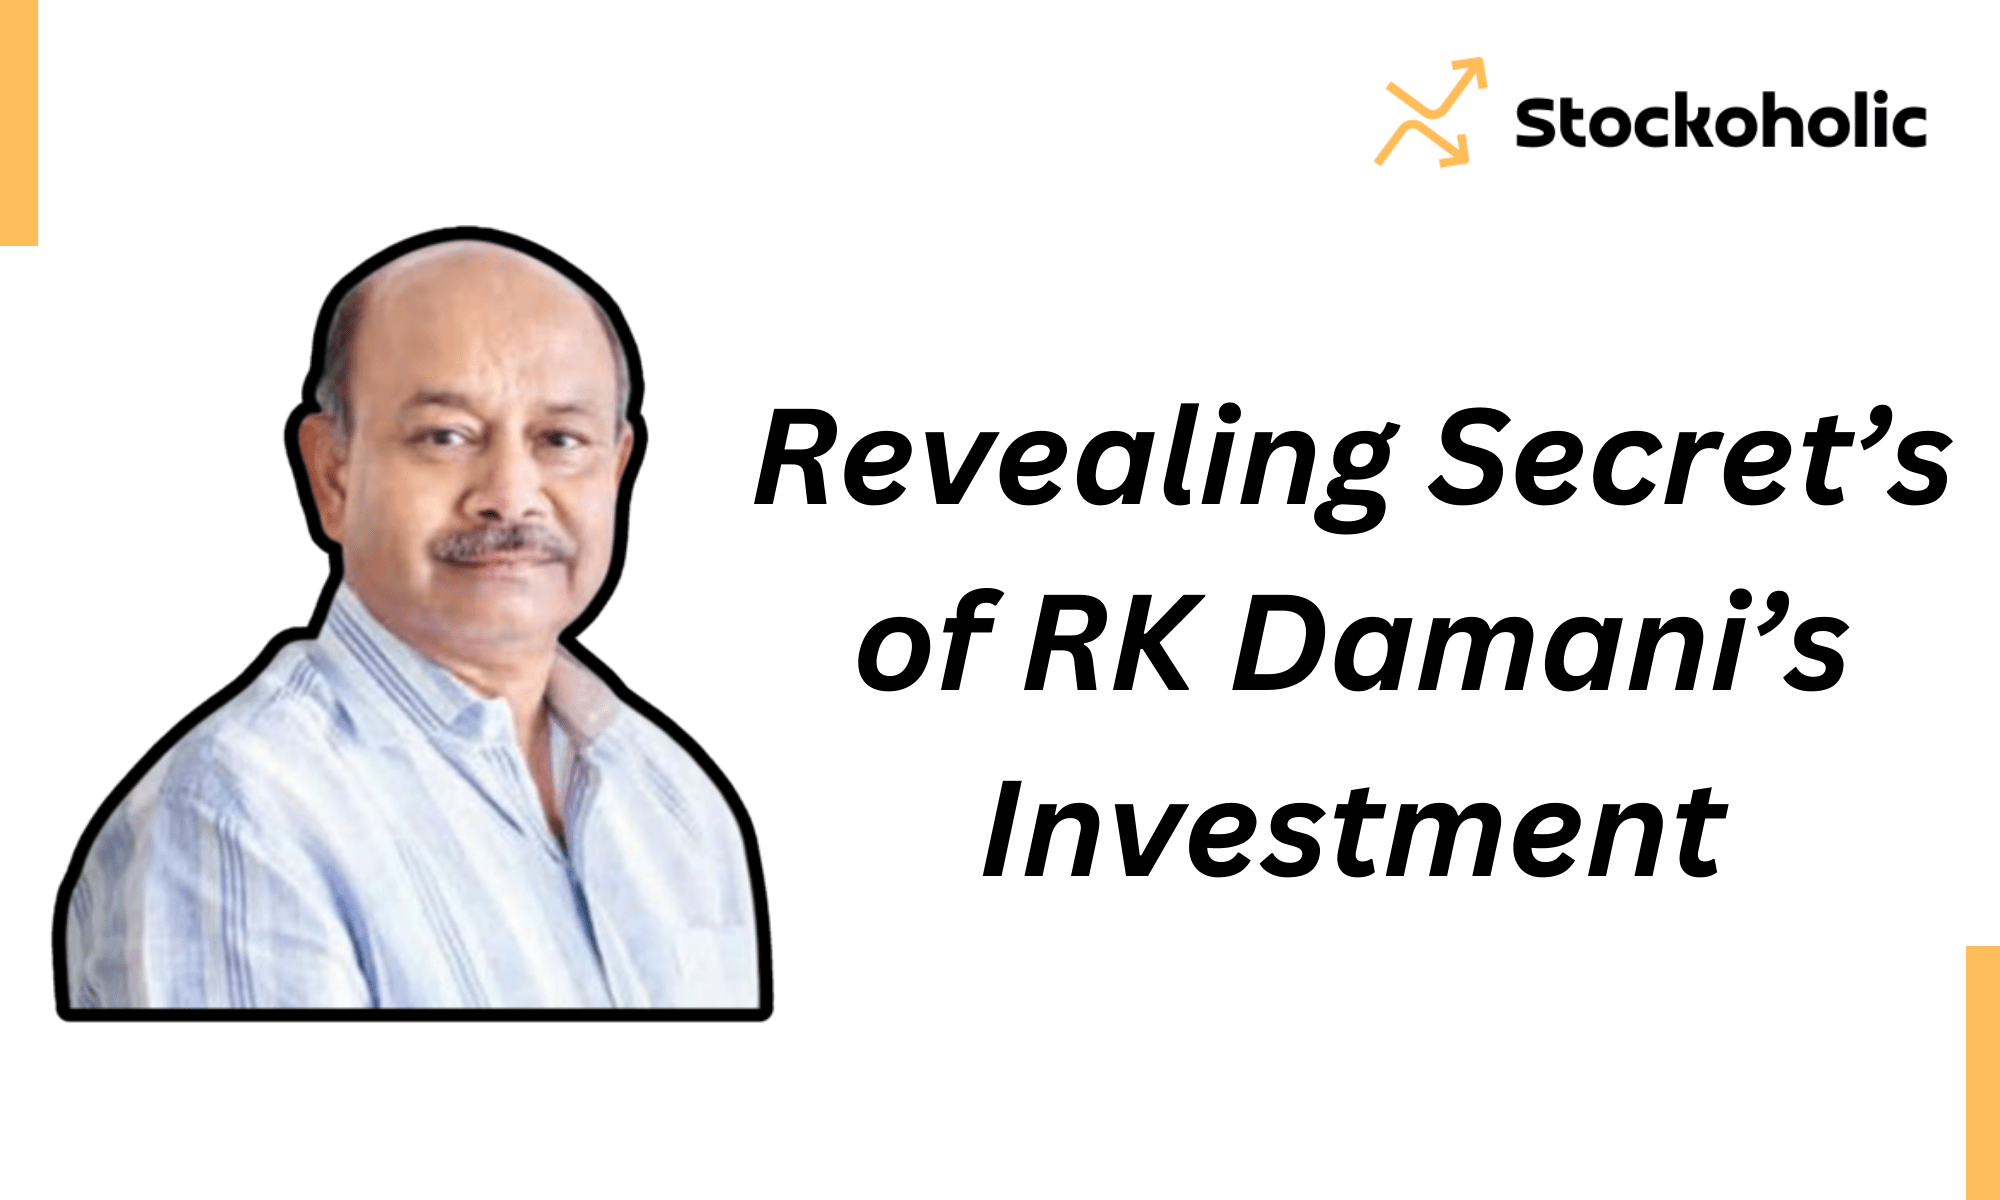 Radhakishan Damani's Investment Strategy